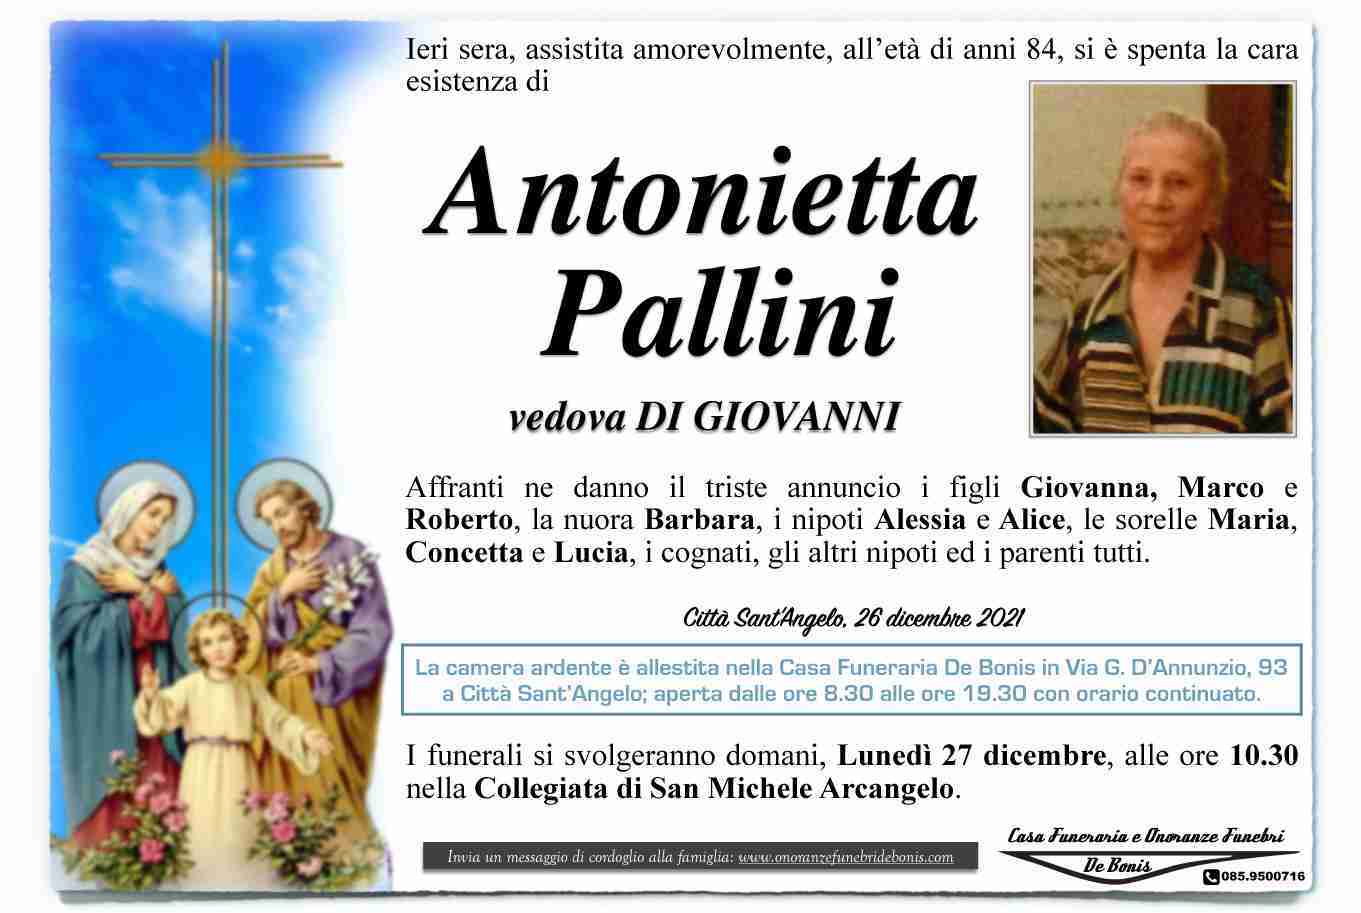 Antonietta Pallini